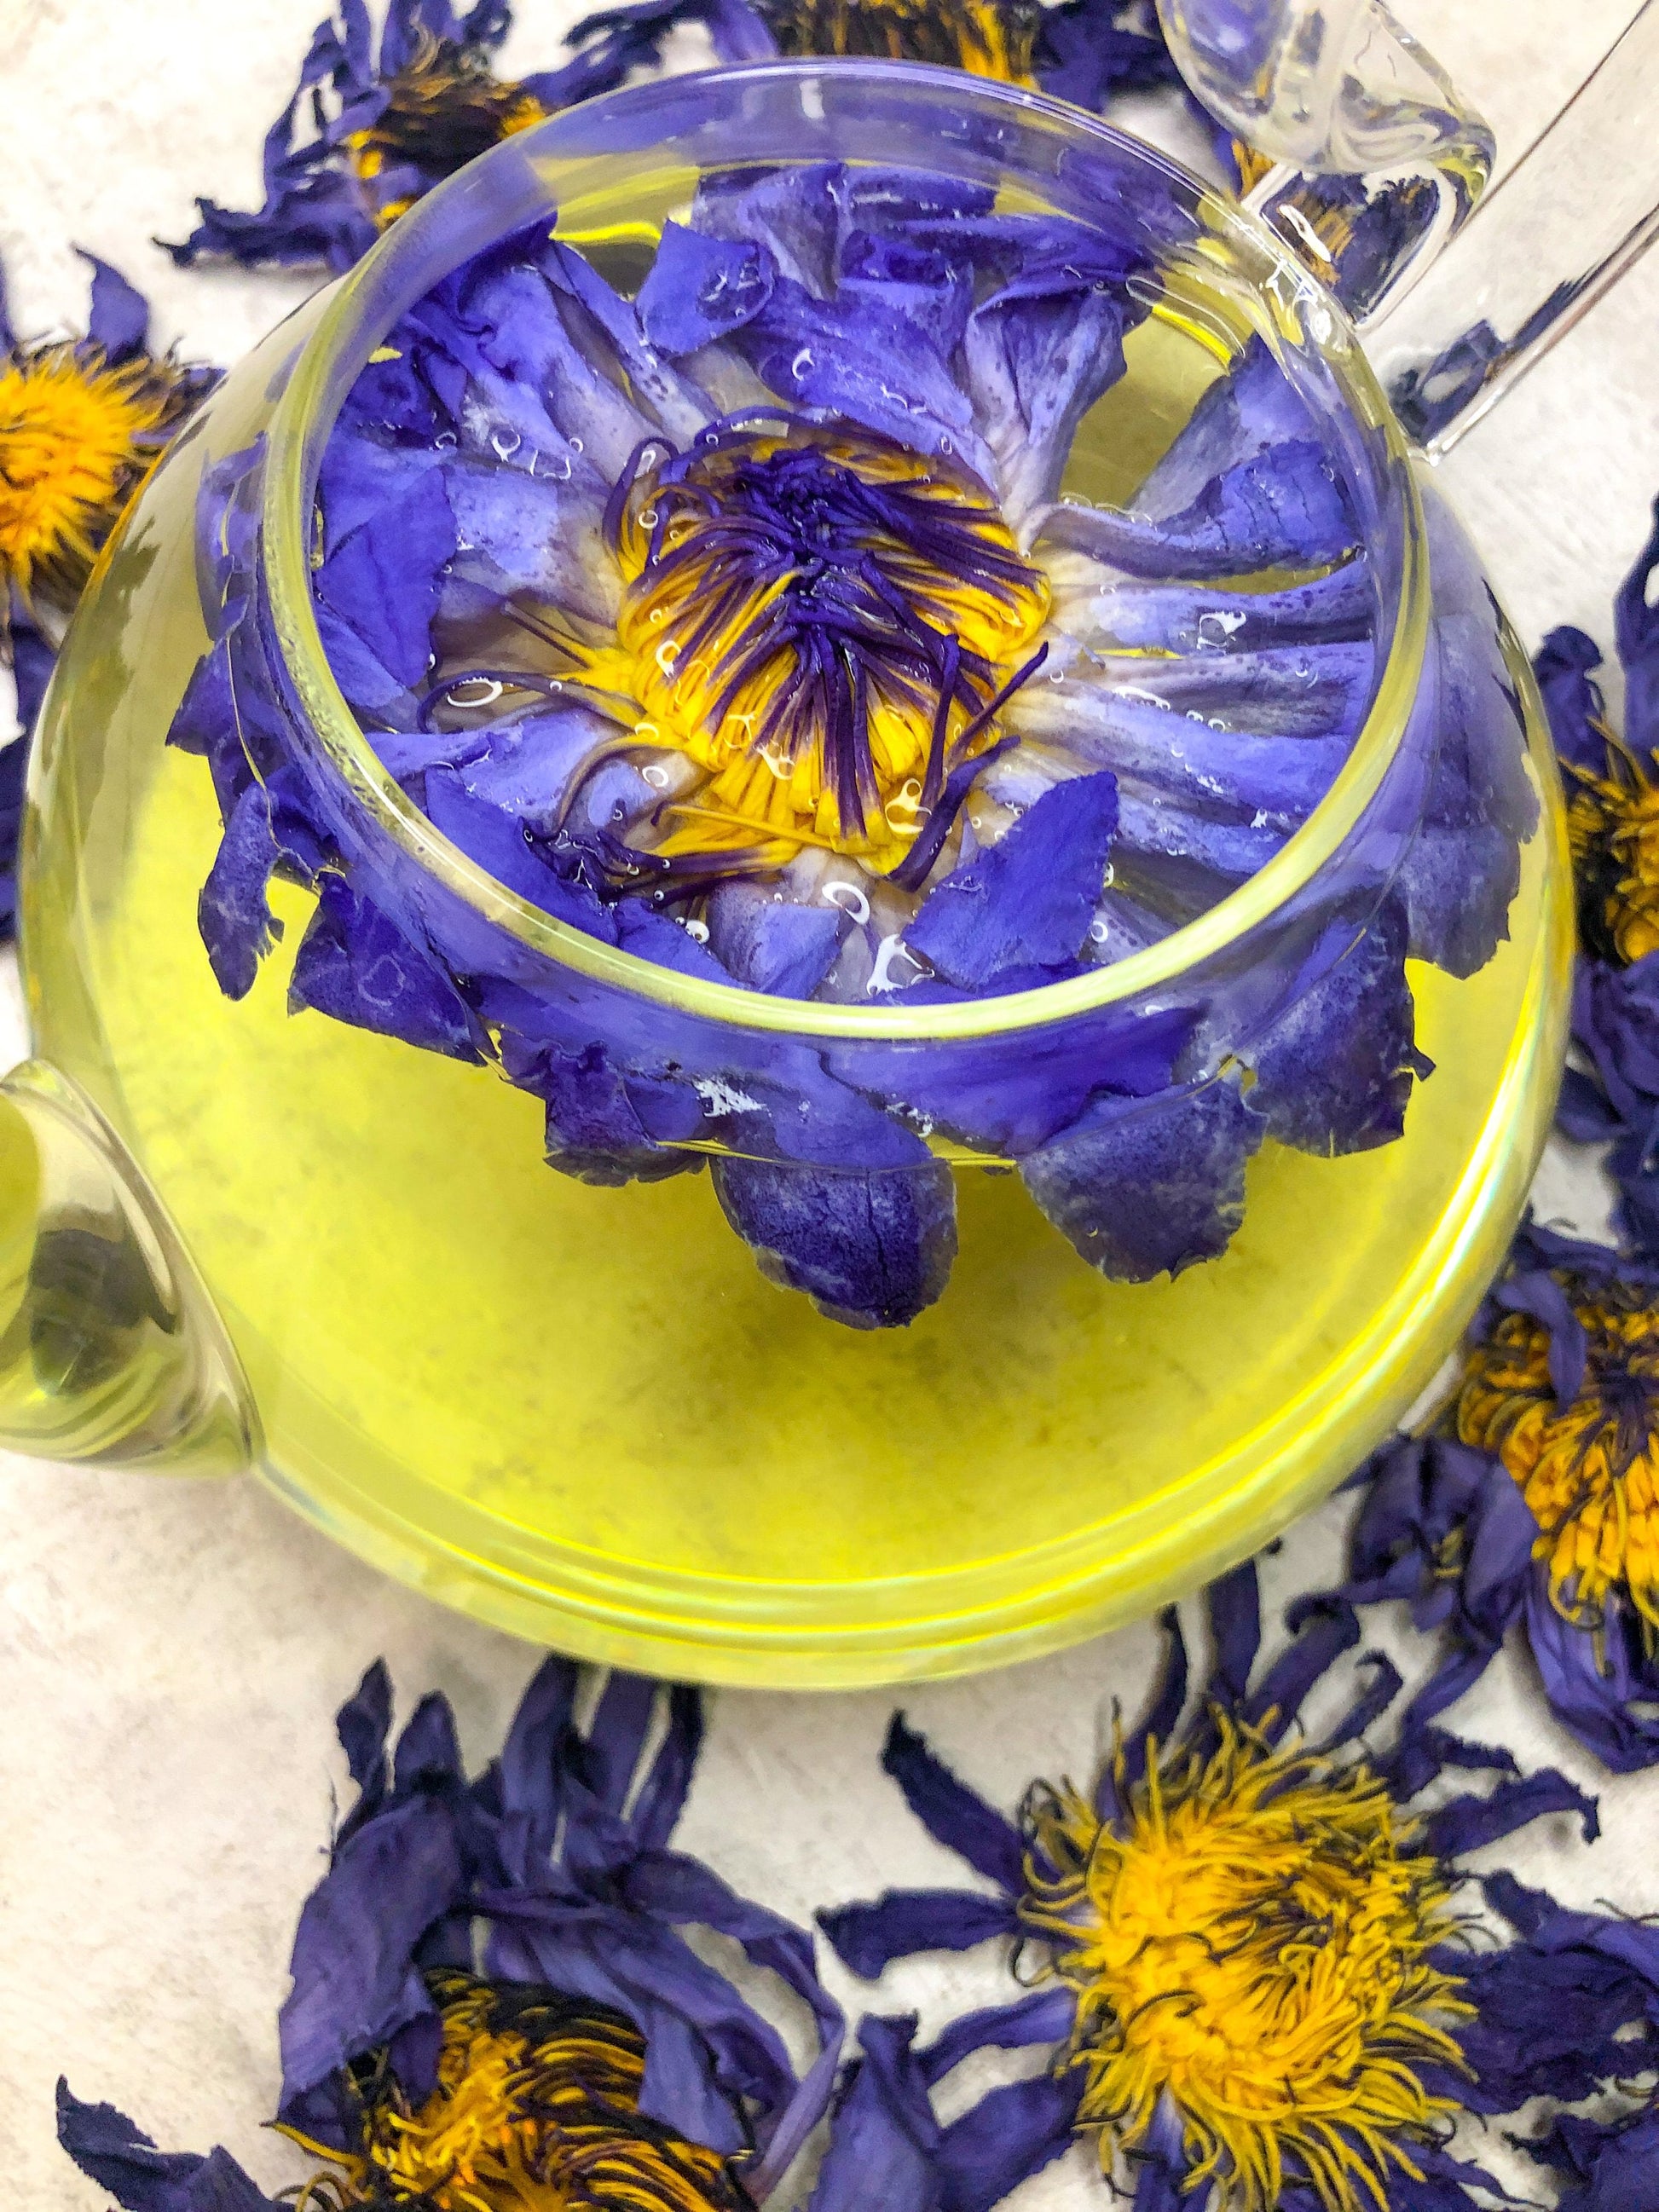 Blue Lotus for tea NEW!!! - Lotus flower tea (Nymphaea caerulea